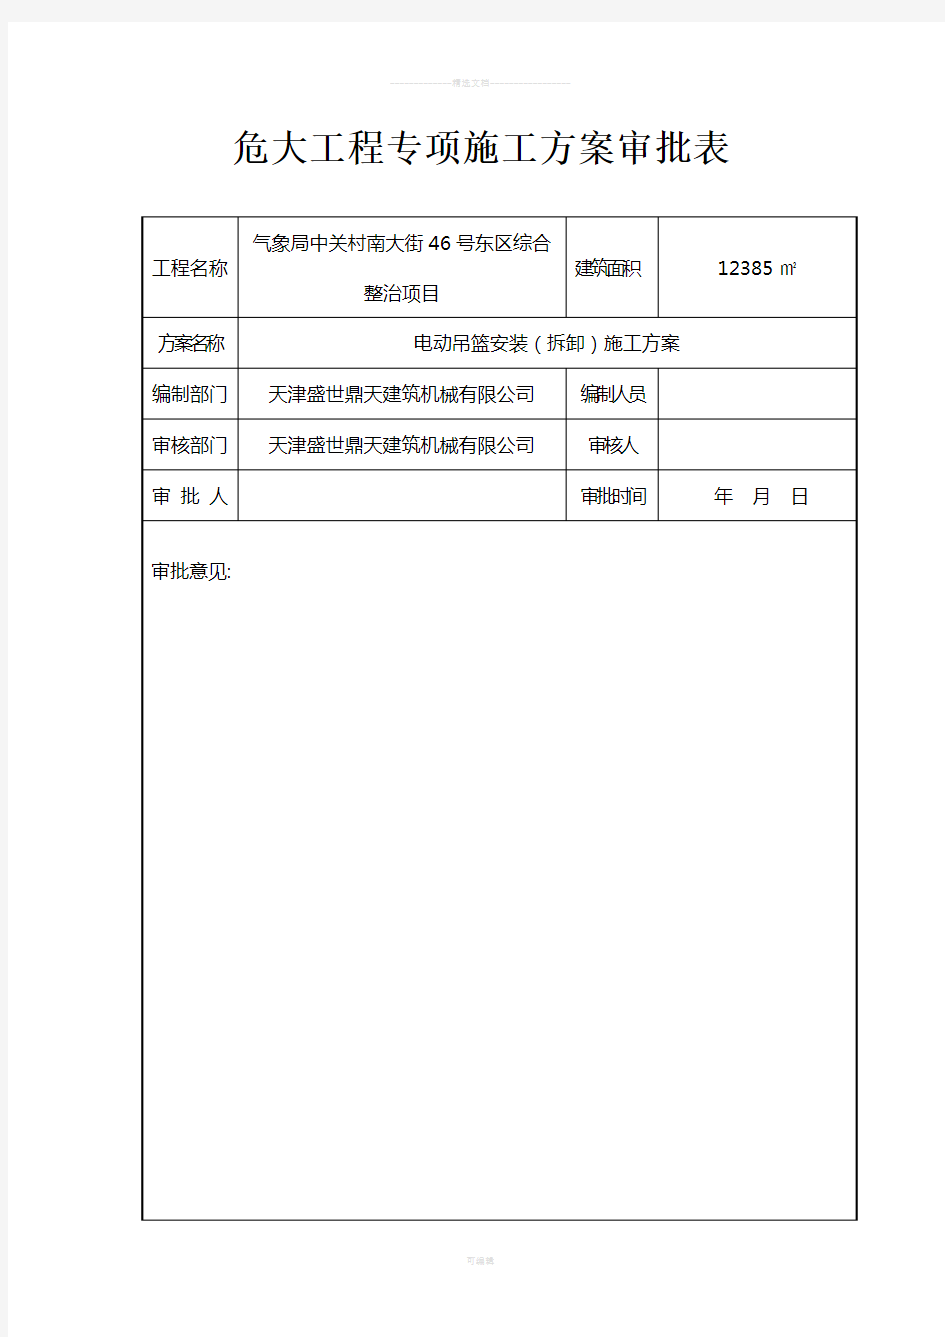 危大工程审批表(样表)2014.3.11